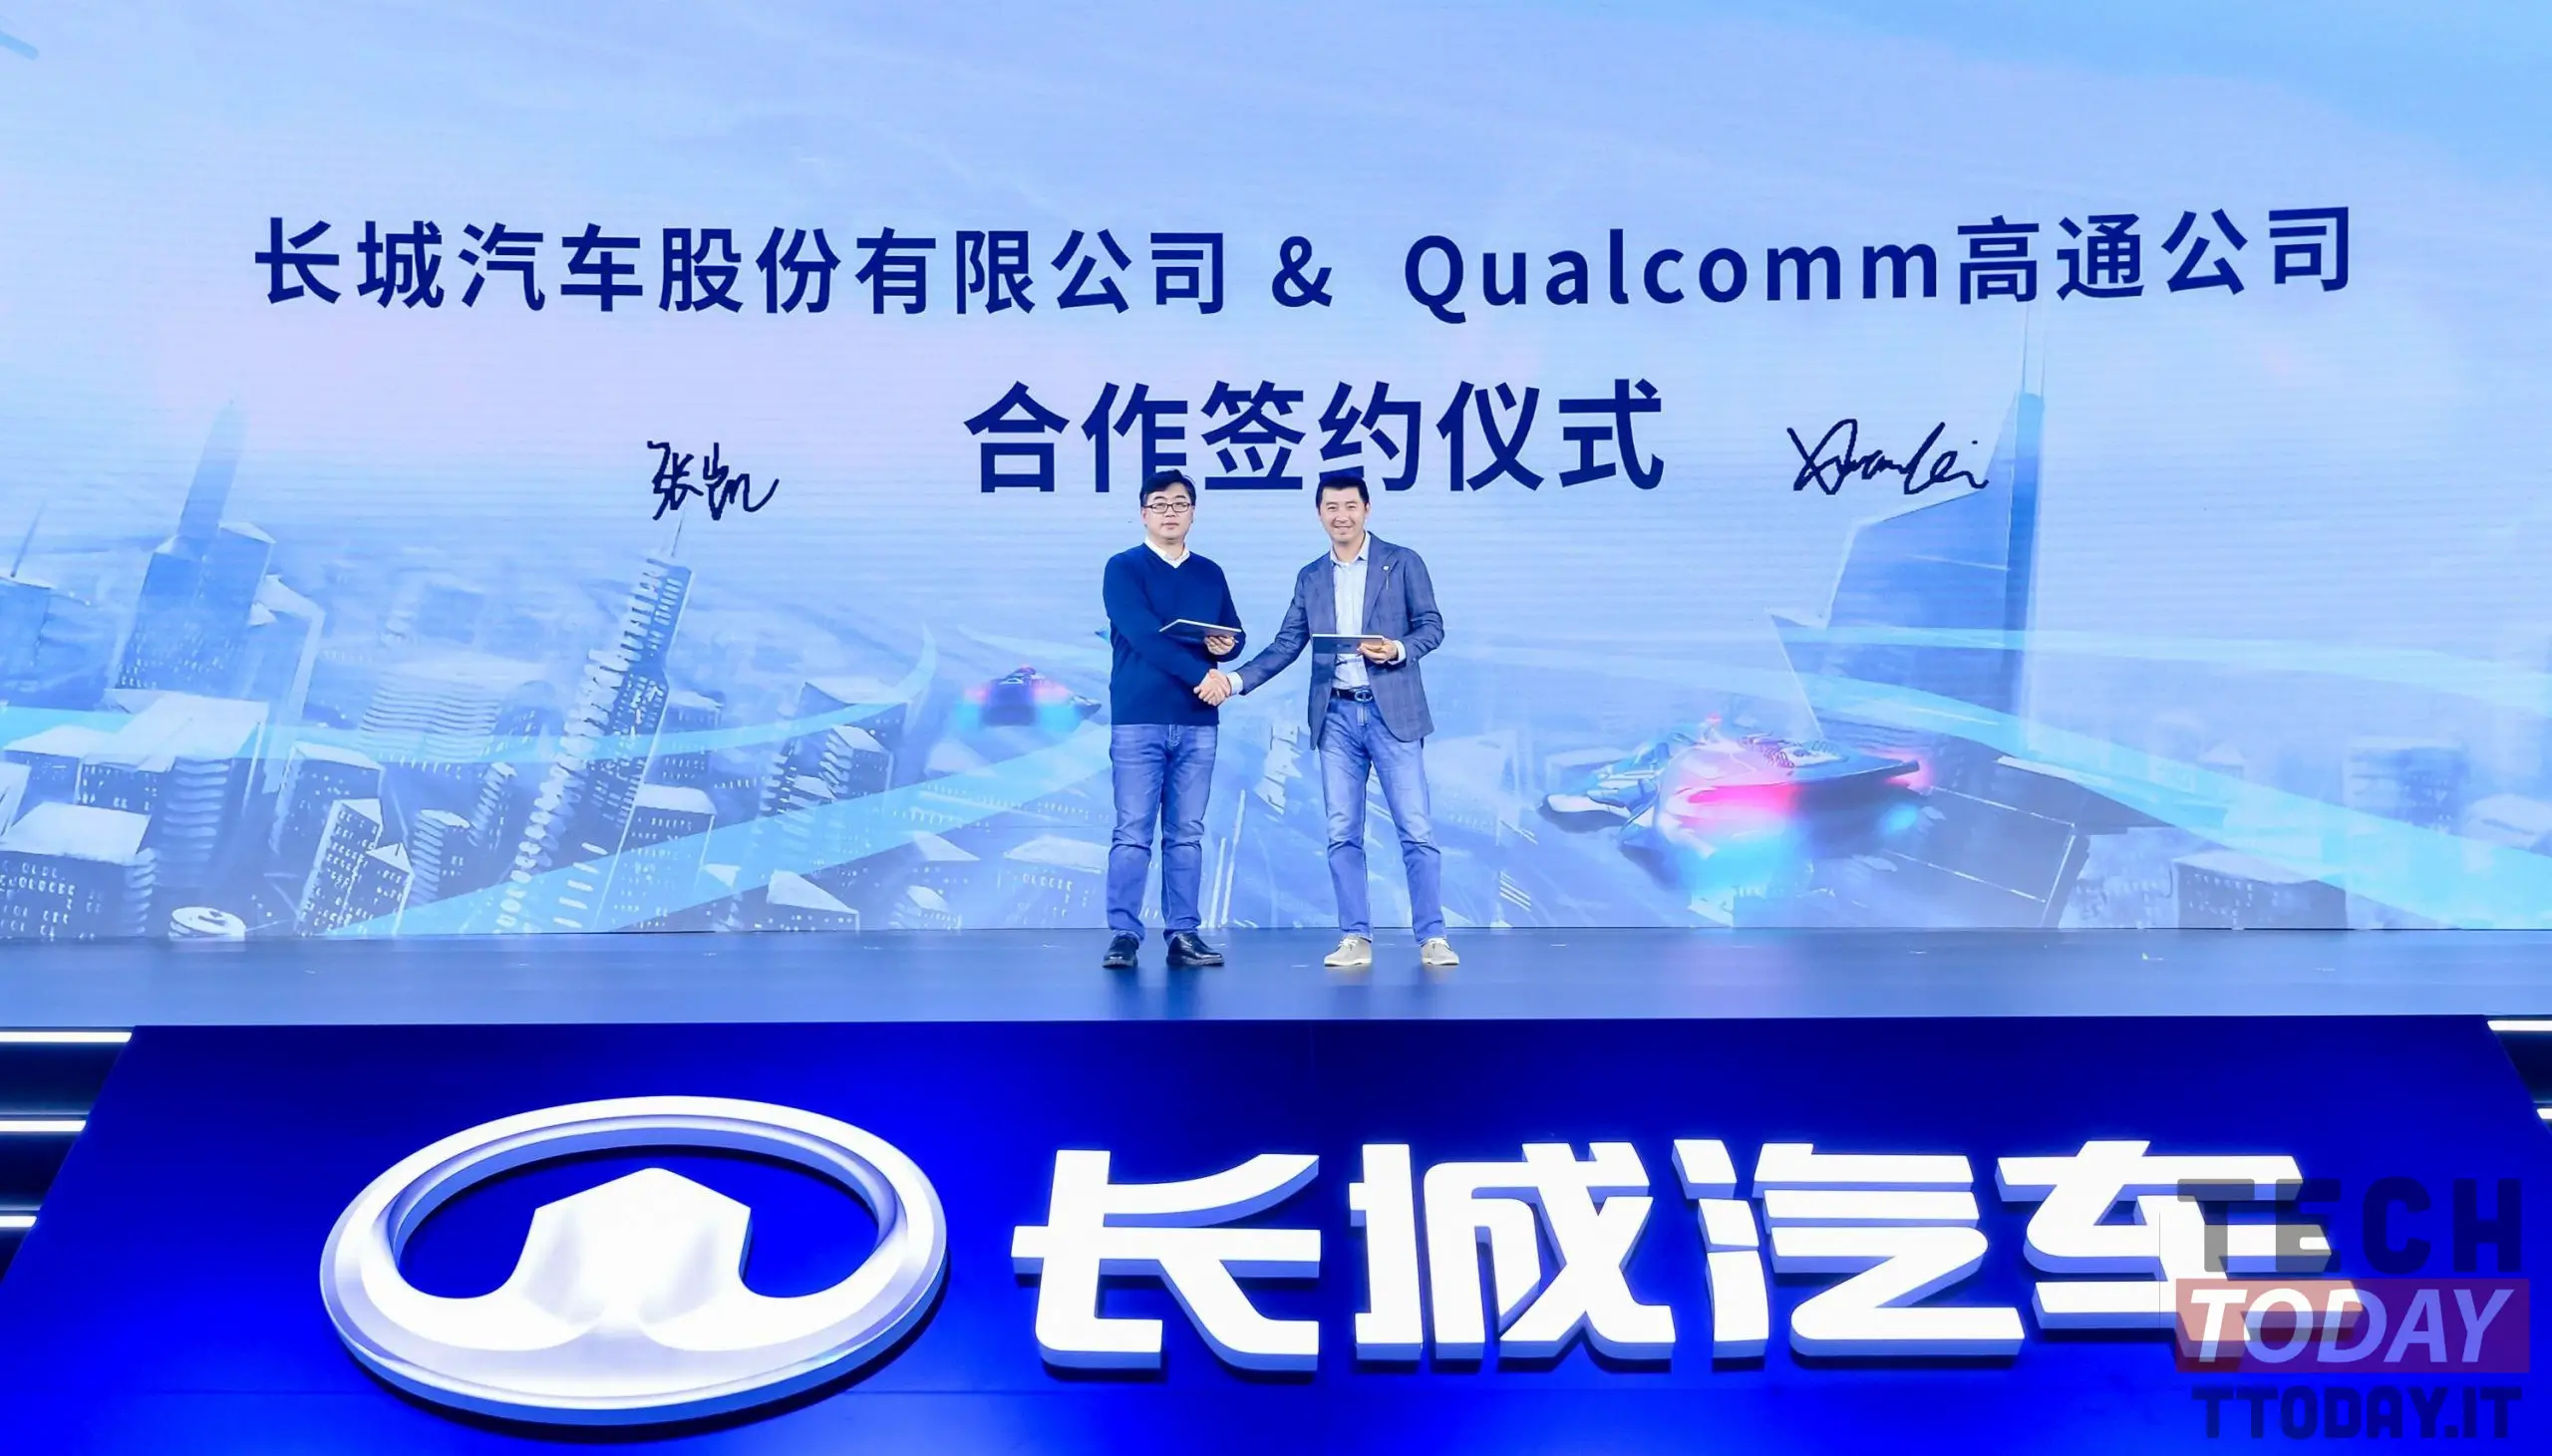 A Qualcomm tem parceria com a Great Wall Motors para tornar os carros ainda mais inteligentes